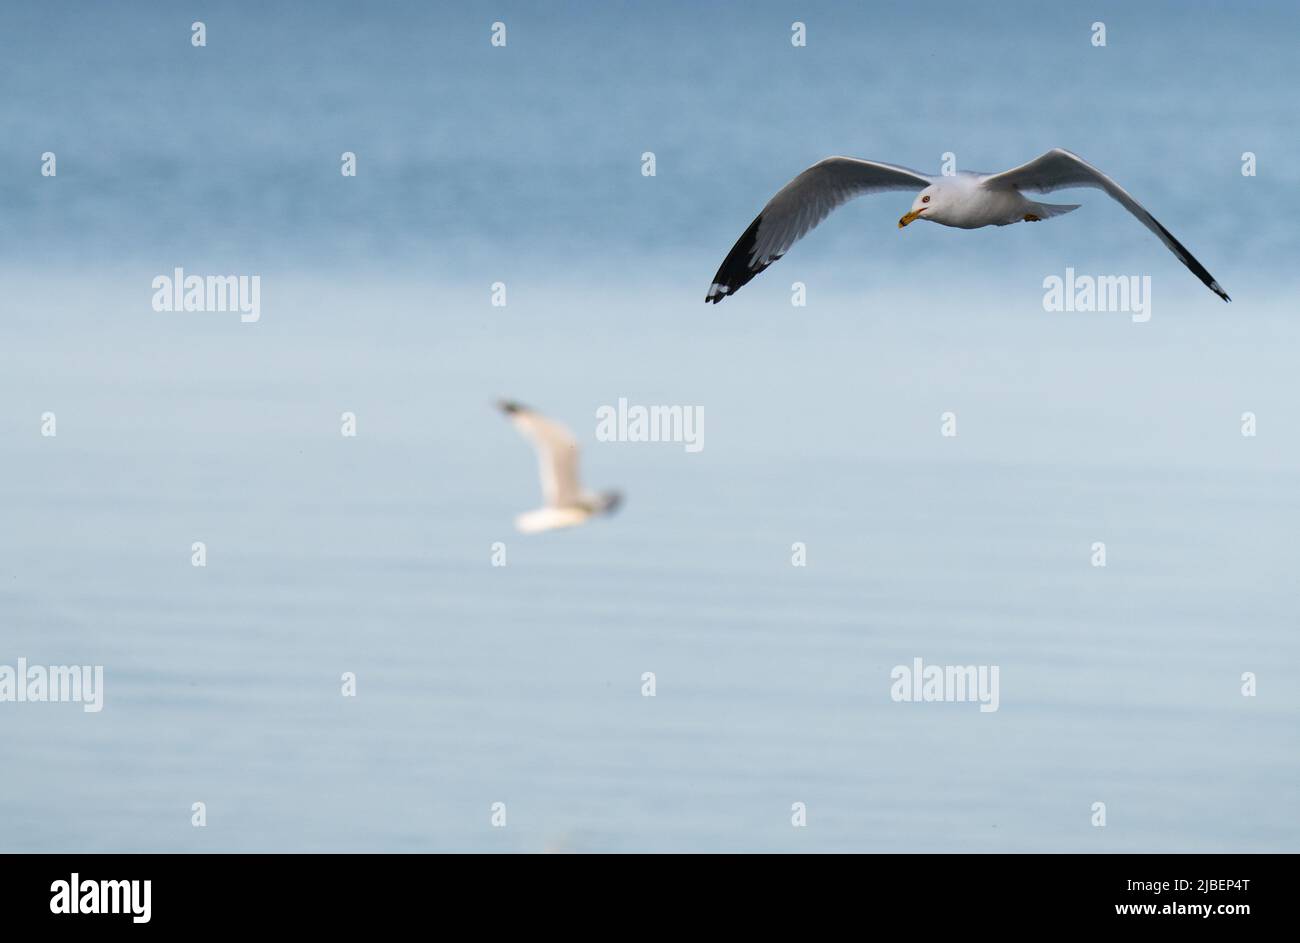 Un ave de agua de gaviota aislada o aves acuáticas en pleno vuelo con alas esparcidas sobre el agua del Lago Ontario en Canadá, sala de formato horizontal para el tipo Foto de stock